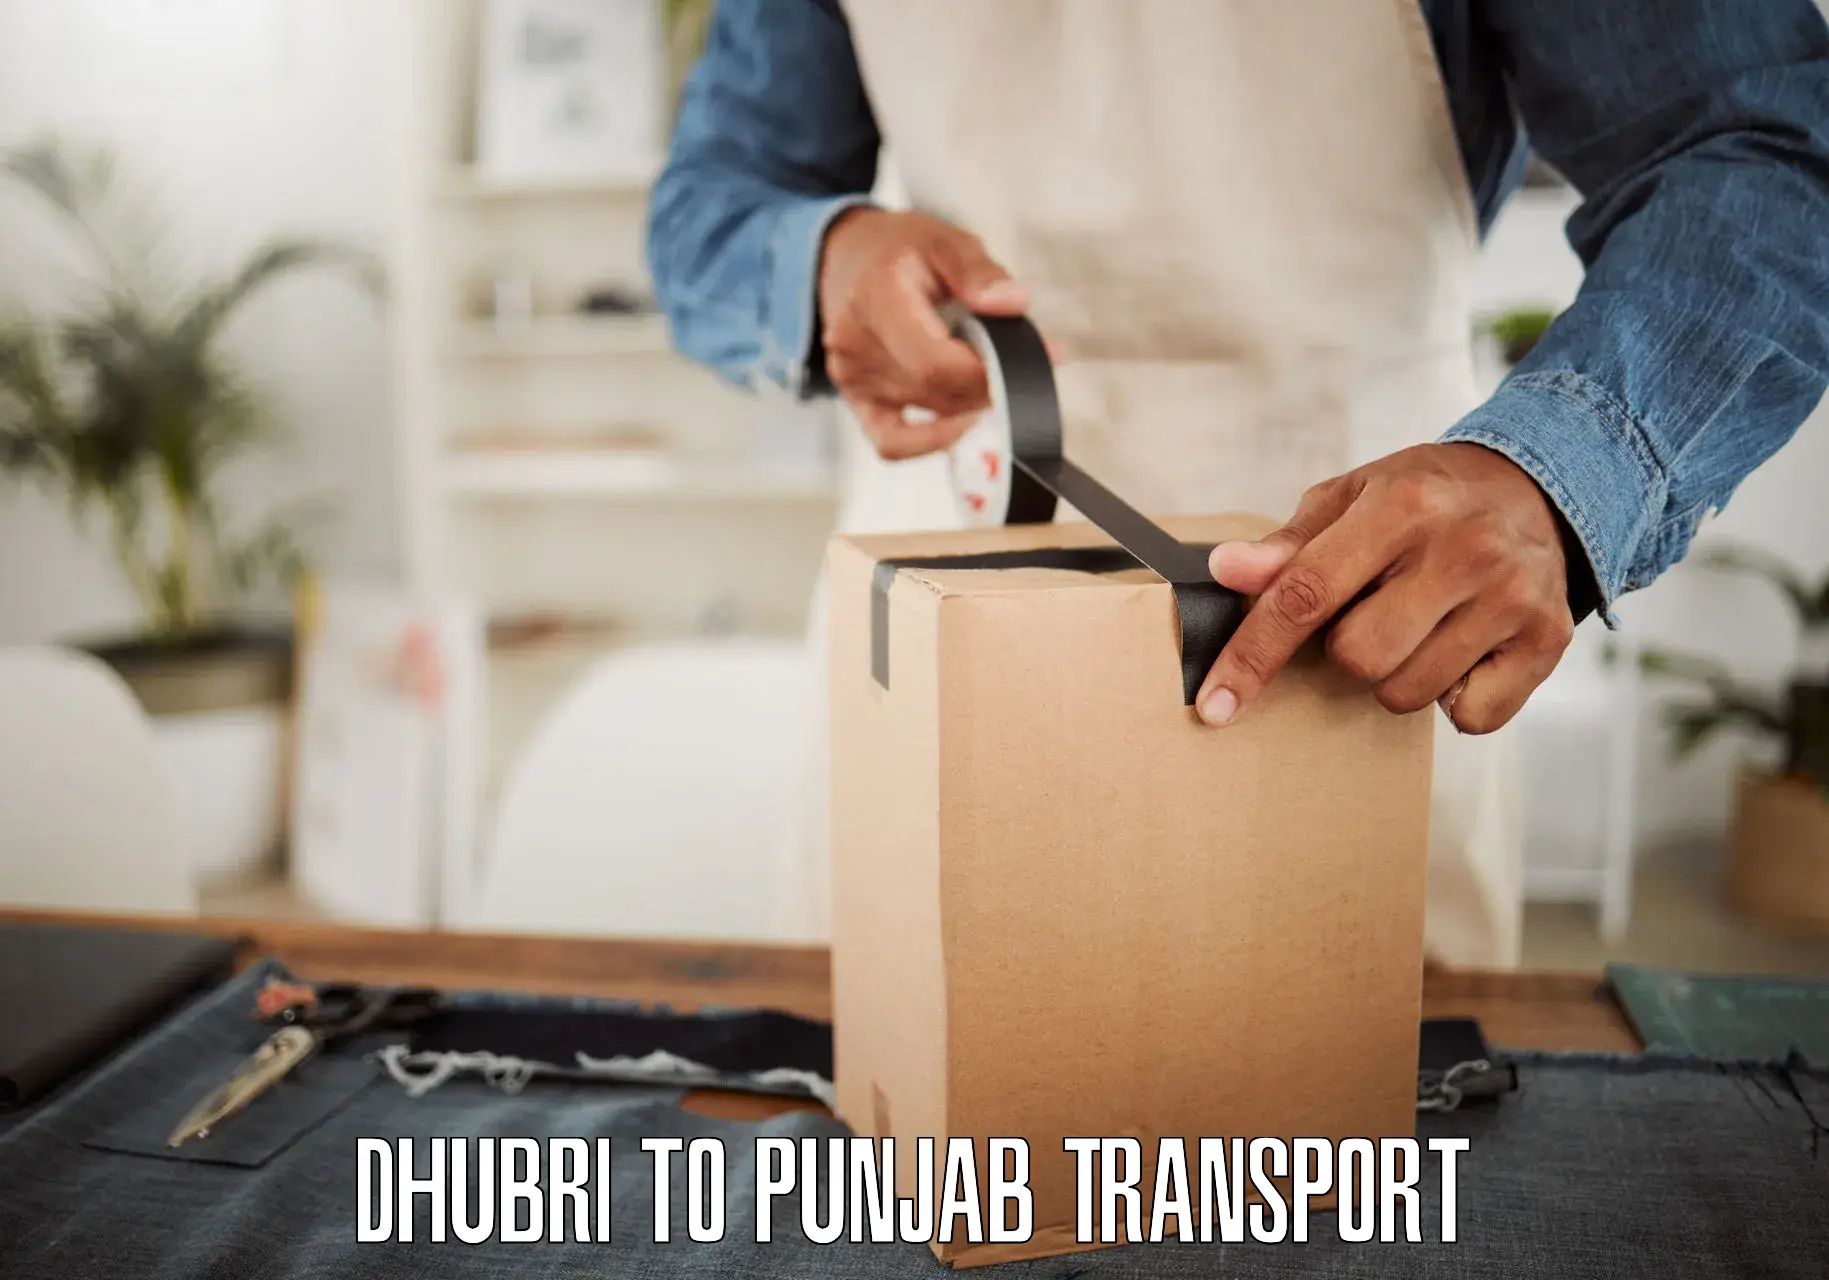 Online transport service Dhubri to Abohar